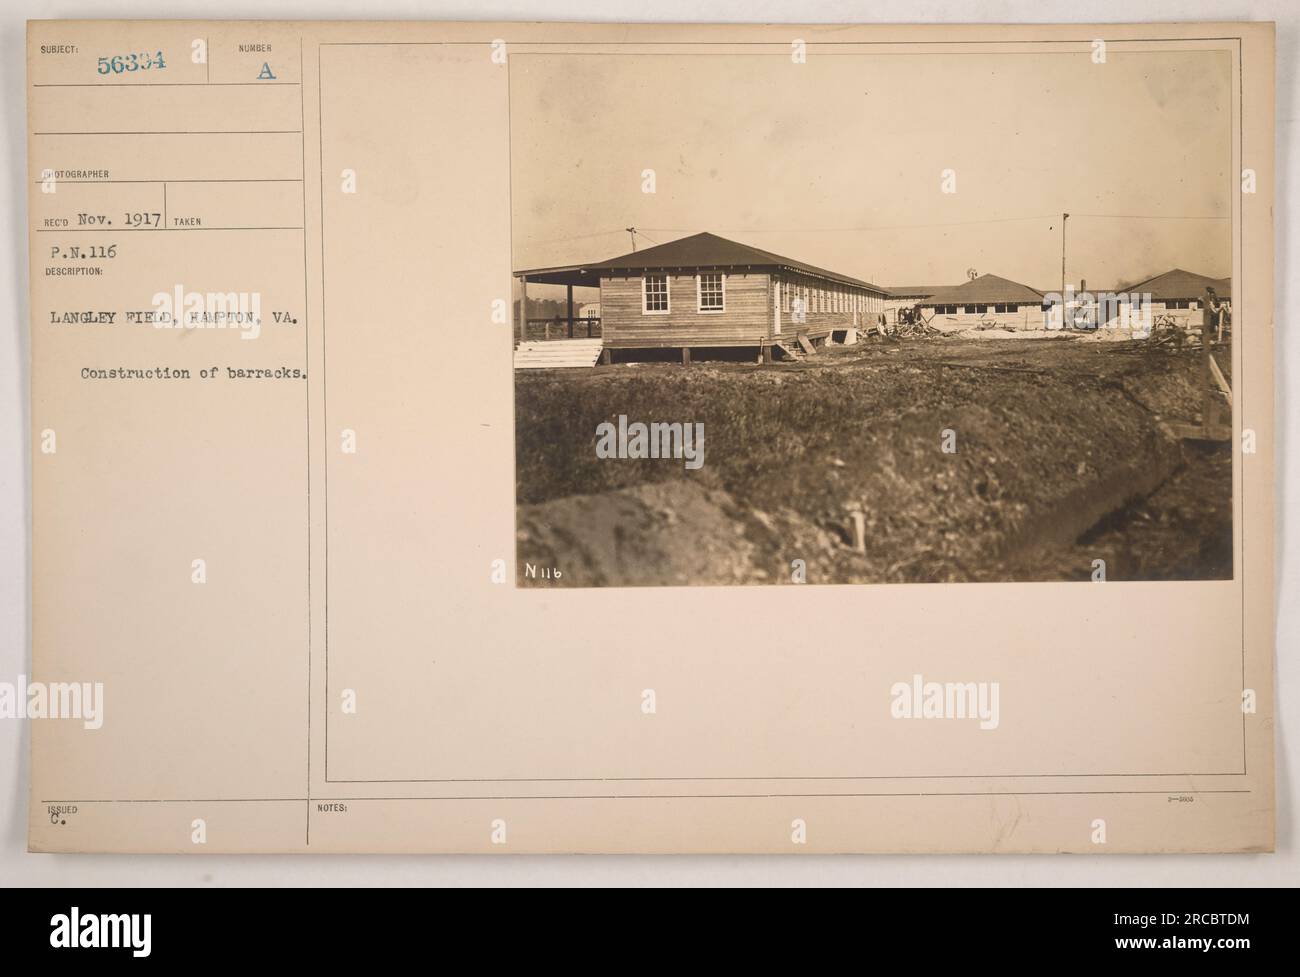 Costruzione di caserme a Langley Field a Hampton, Virginia, nel novembre 1917. Questa fotografia, identificata come soggetto i 56334, è stata scattata dal fotografo SECD. Fa parte di una serie di fotografie del P.N.116 che raffigurano le attività militari americane durante la prima guerra mondiale. Foto Stock